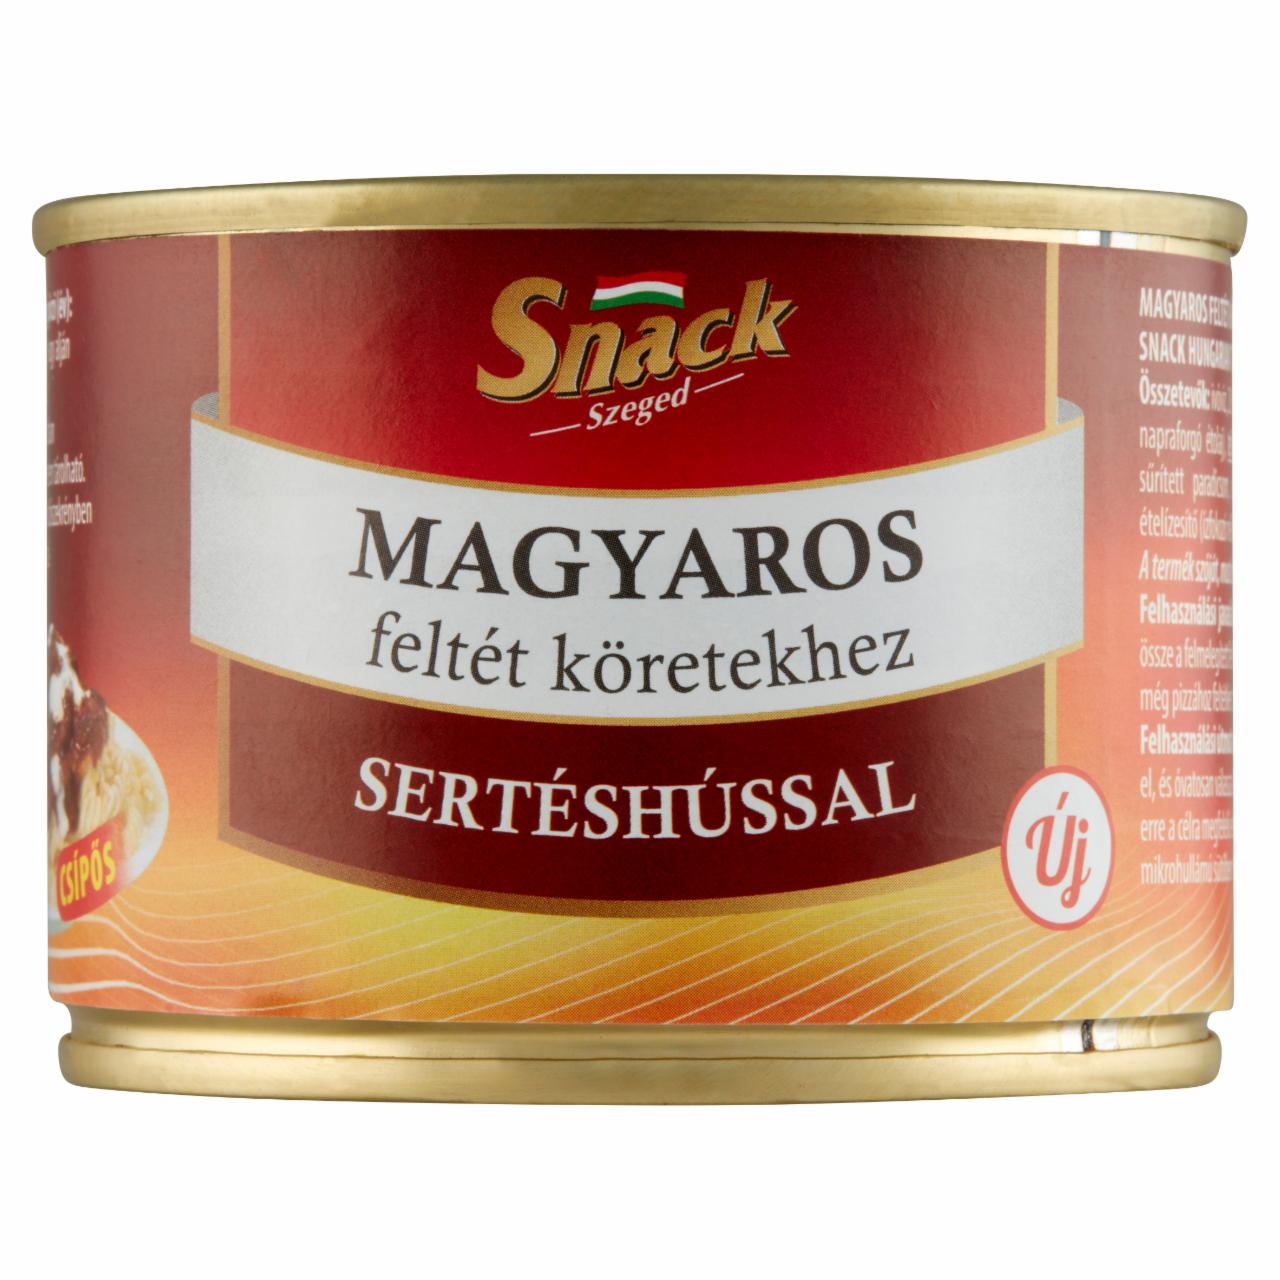 Képek - Snack Szeged magyaros feltét köretekhez sertéshússal 200 g